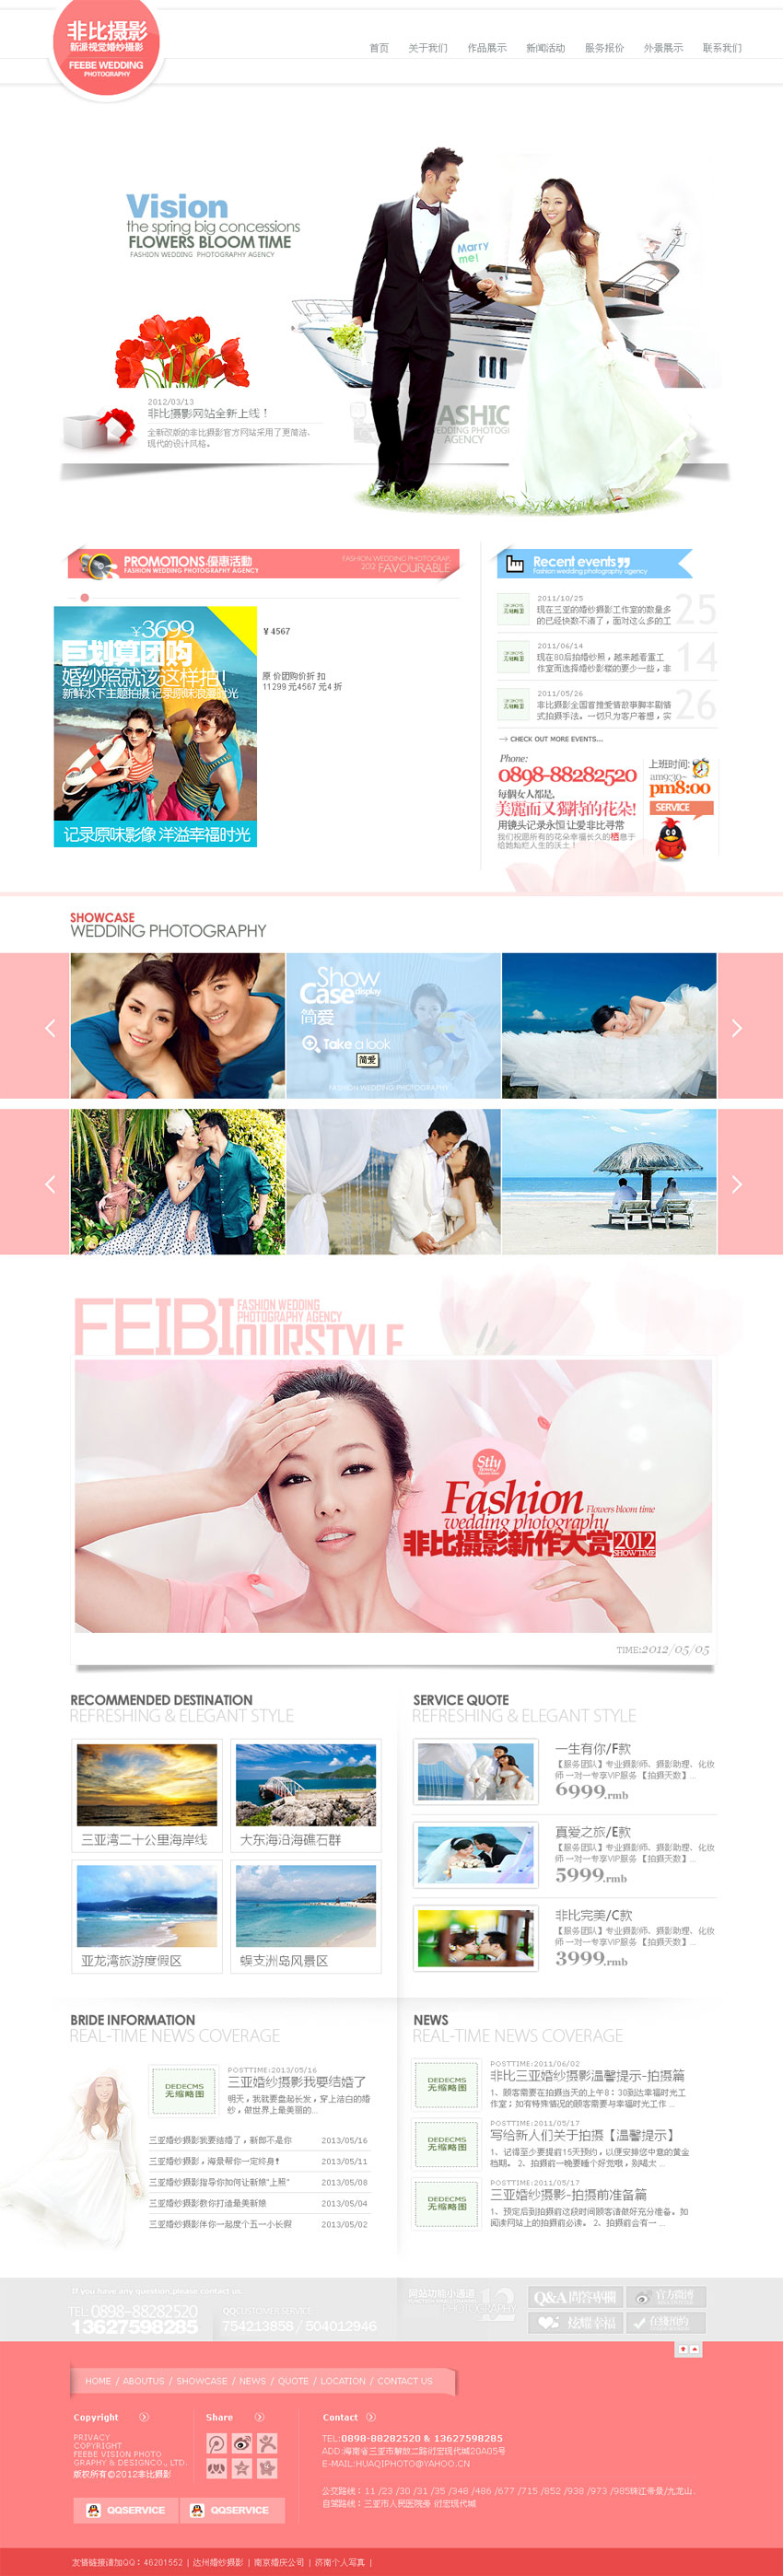 漂亮粉红的婚纱摄影网站源码html模板整站下载